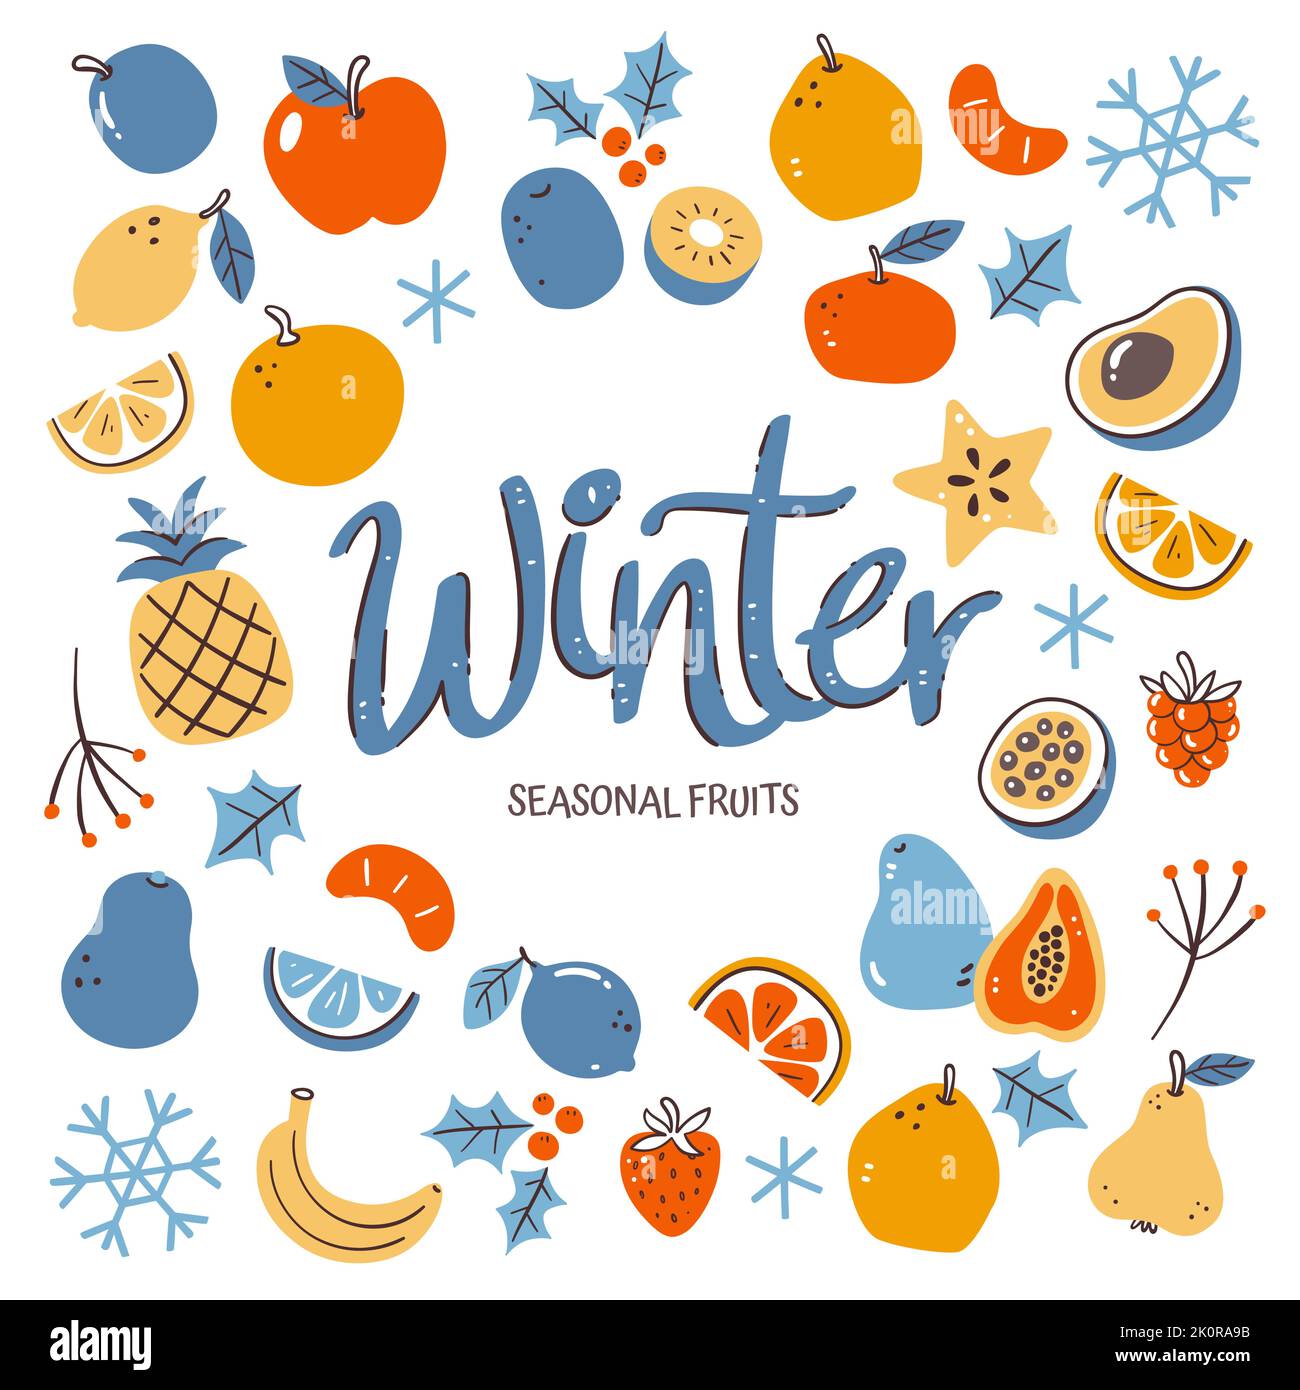 Saisonale Früchte Hintergrund. Winterfrucht-Komposition aus bunten, handgezeichneten Vektor-Icons, isoliert auf weißem Hintergrund. Stock Vektor